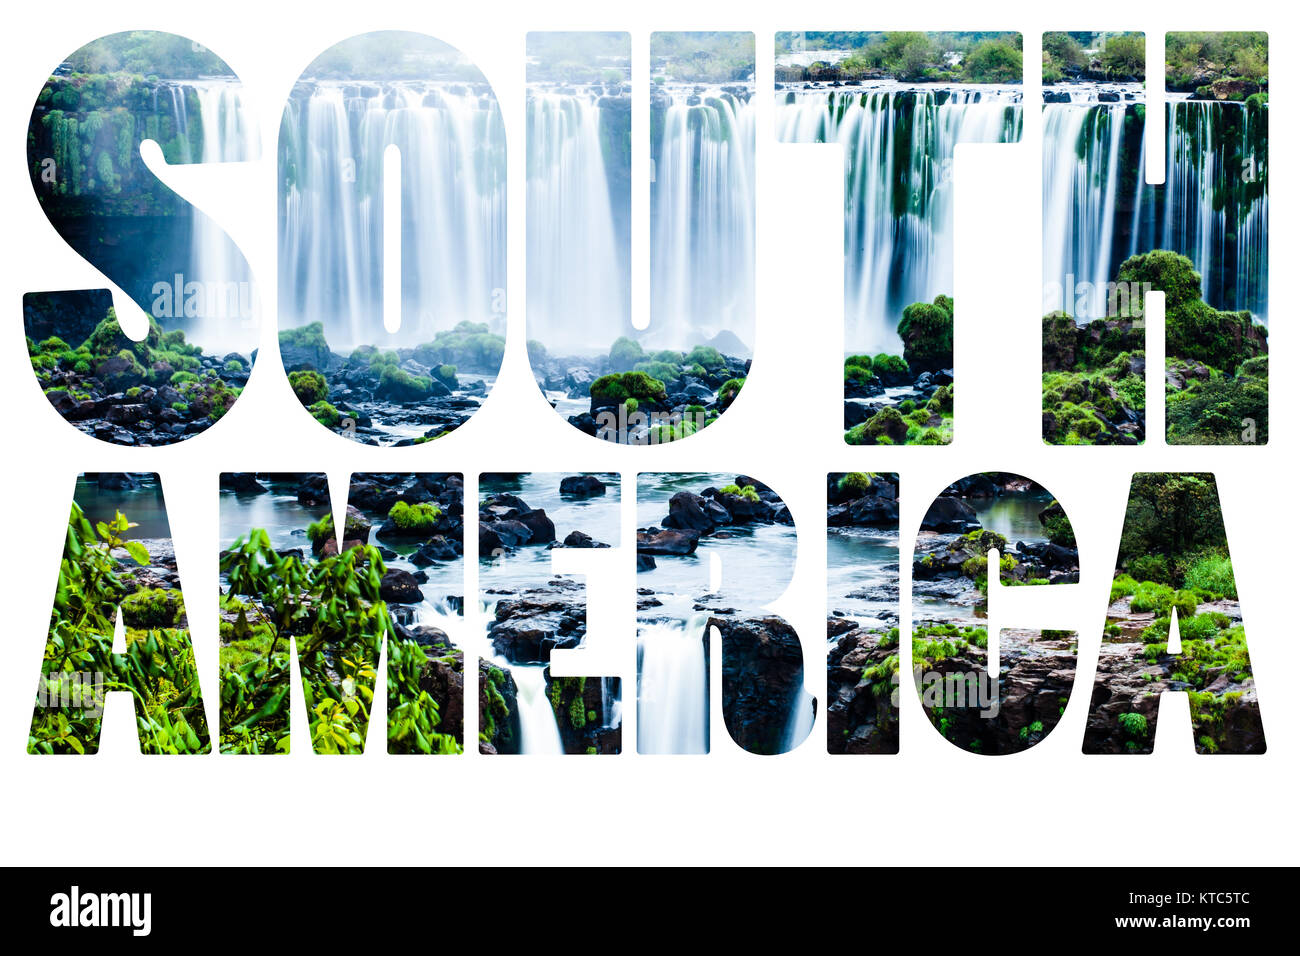 Parola America del Sud - Iguassu Falls, la più grande serie di cascate del mondo Foto Stock